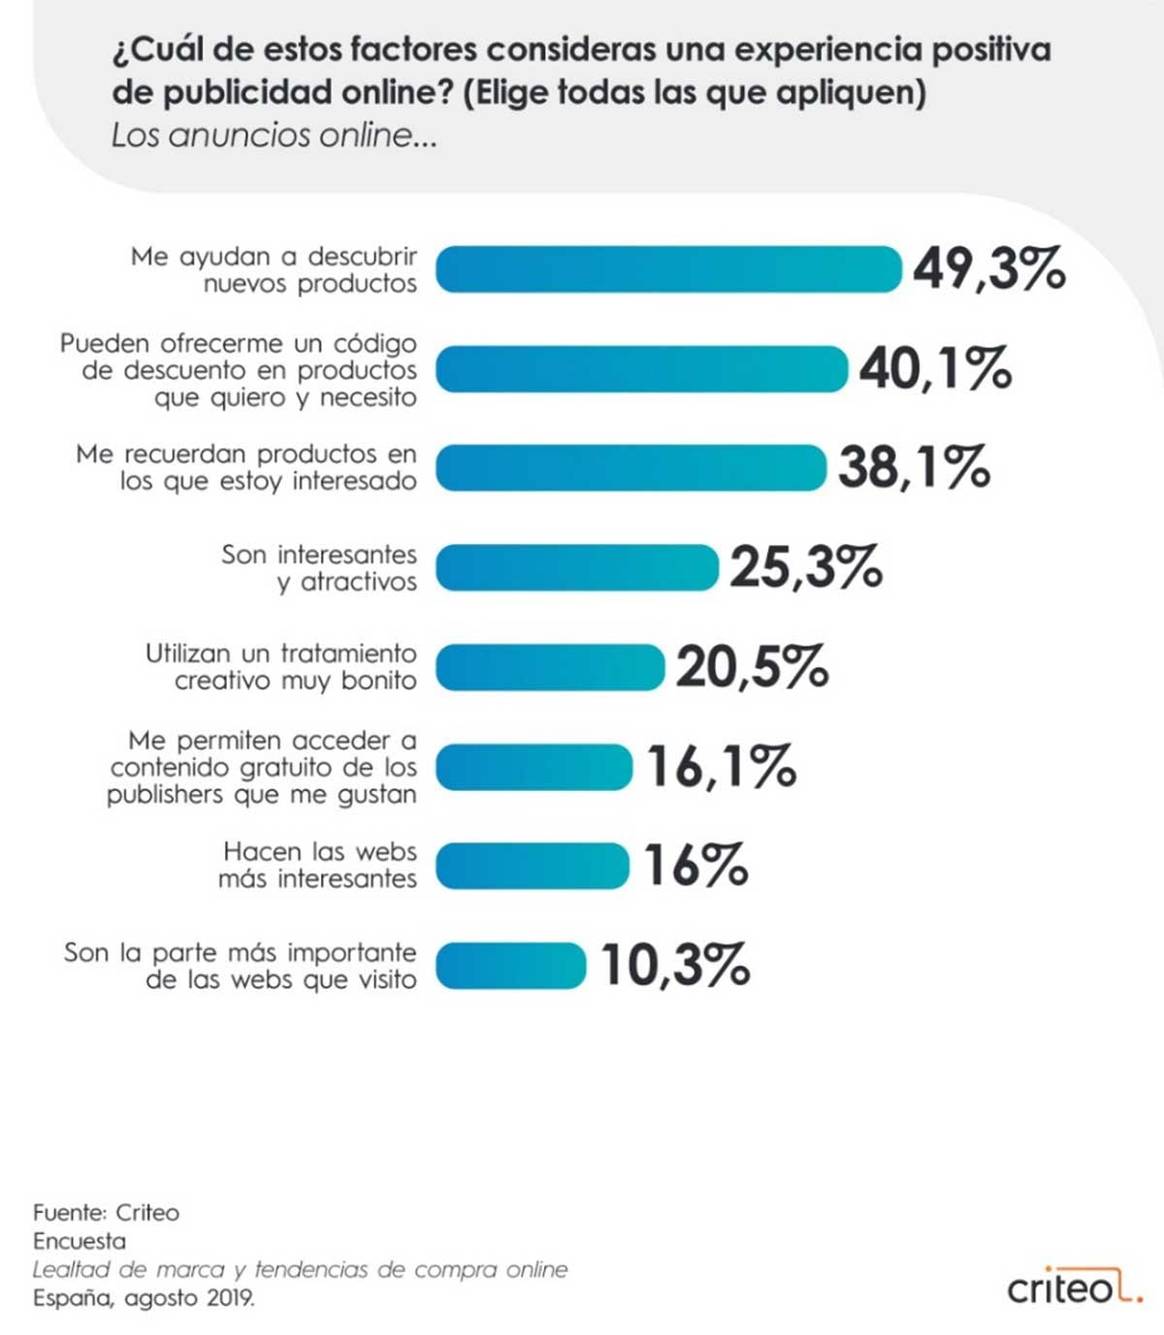 La “infidelidad” del consumidor español: el 76 por ciento probaría otras marcas